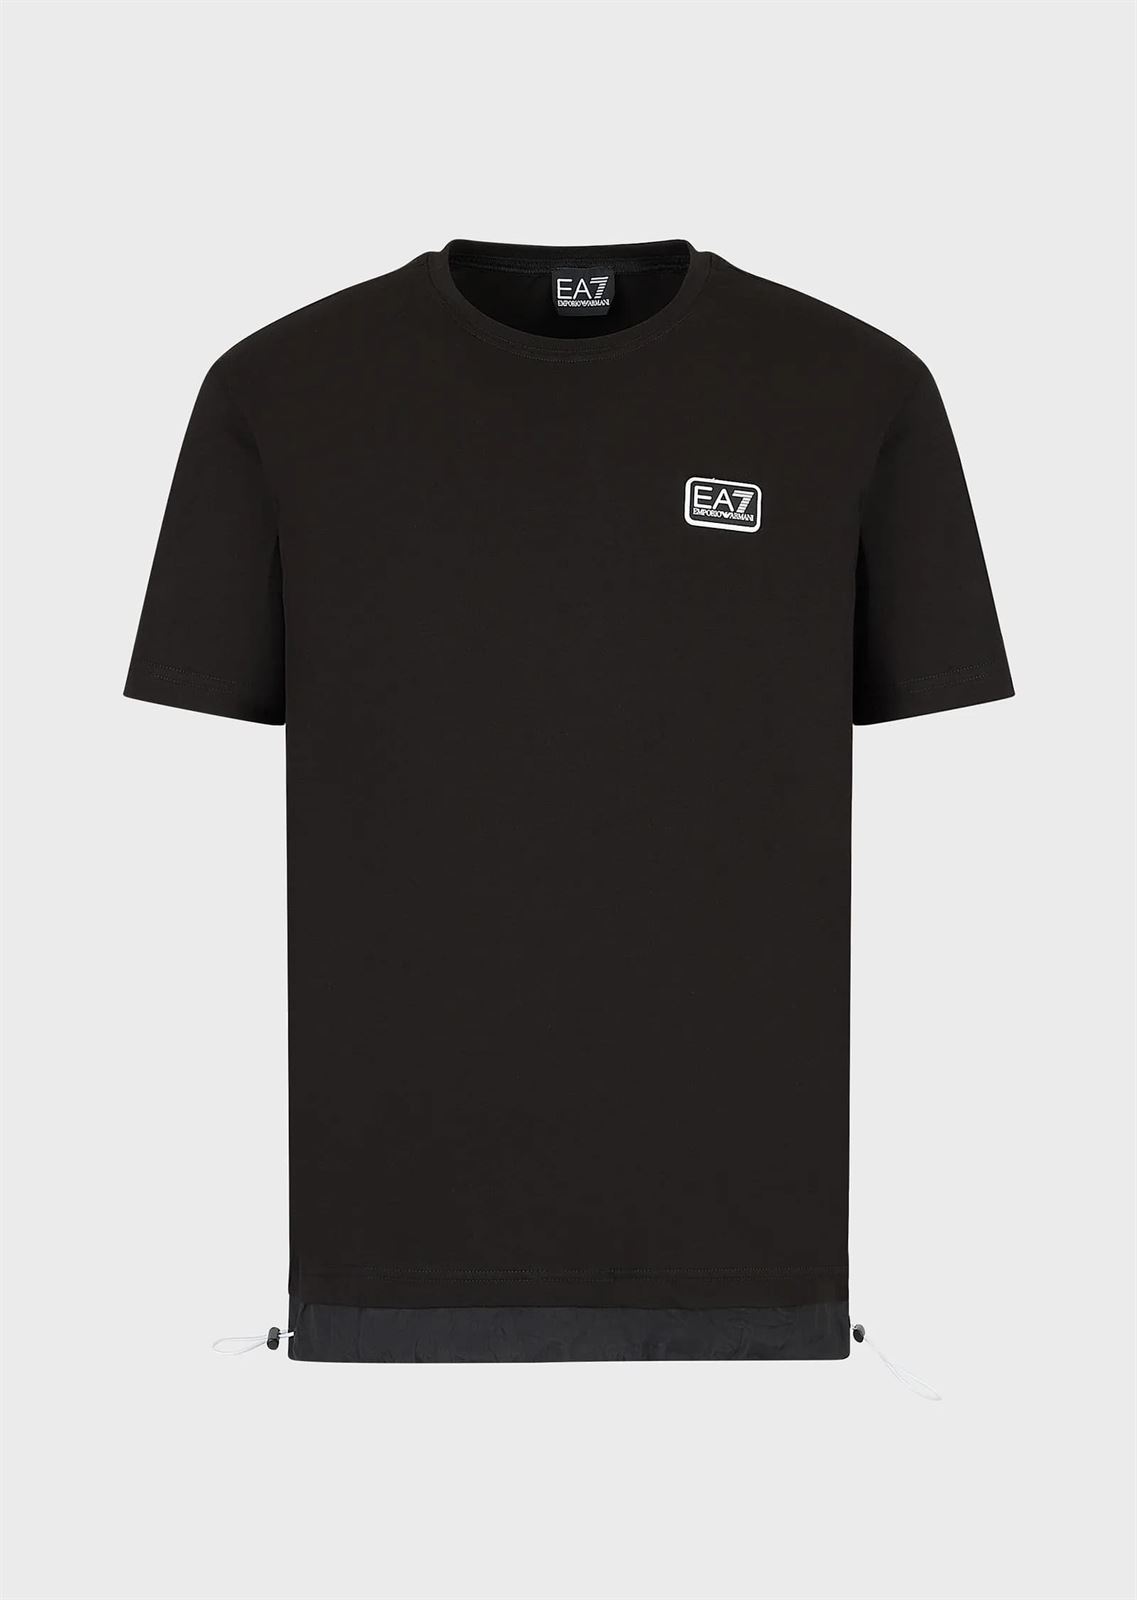 Camiseta EA7 Emporio Armani 3RPT18 PJ02Z 1200 negra - Imagen 3